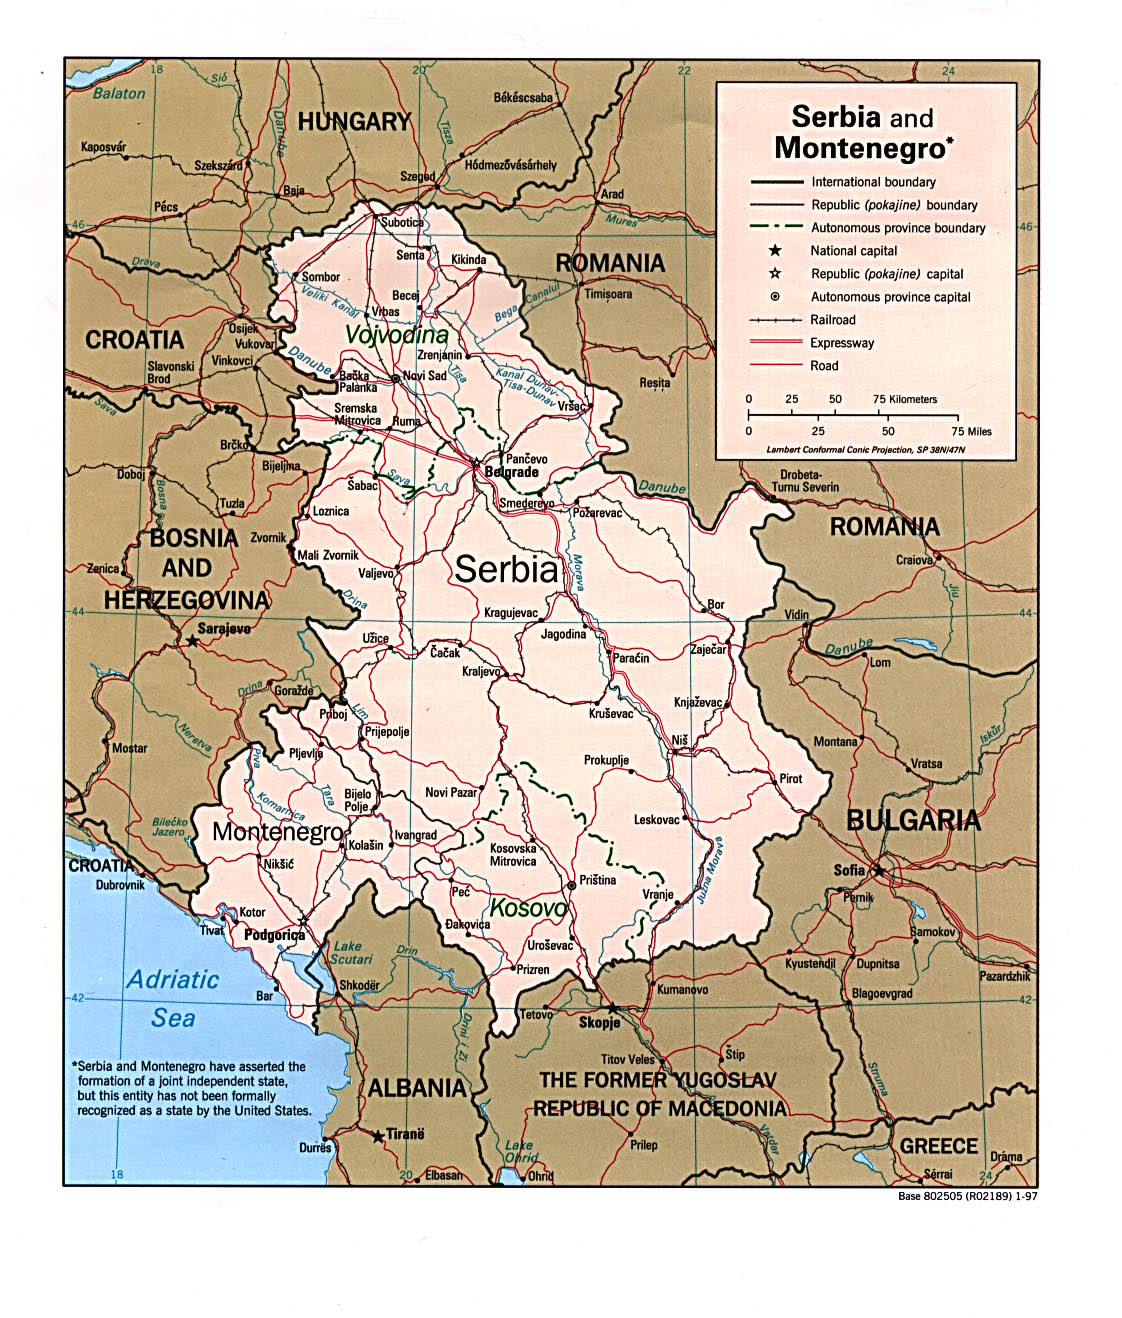 Mapa Politico de Serbia y Montenegro